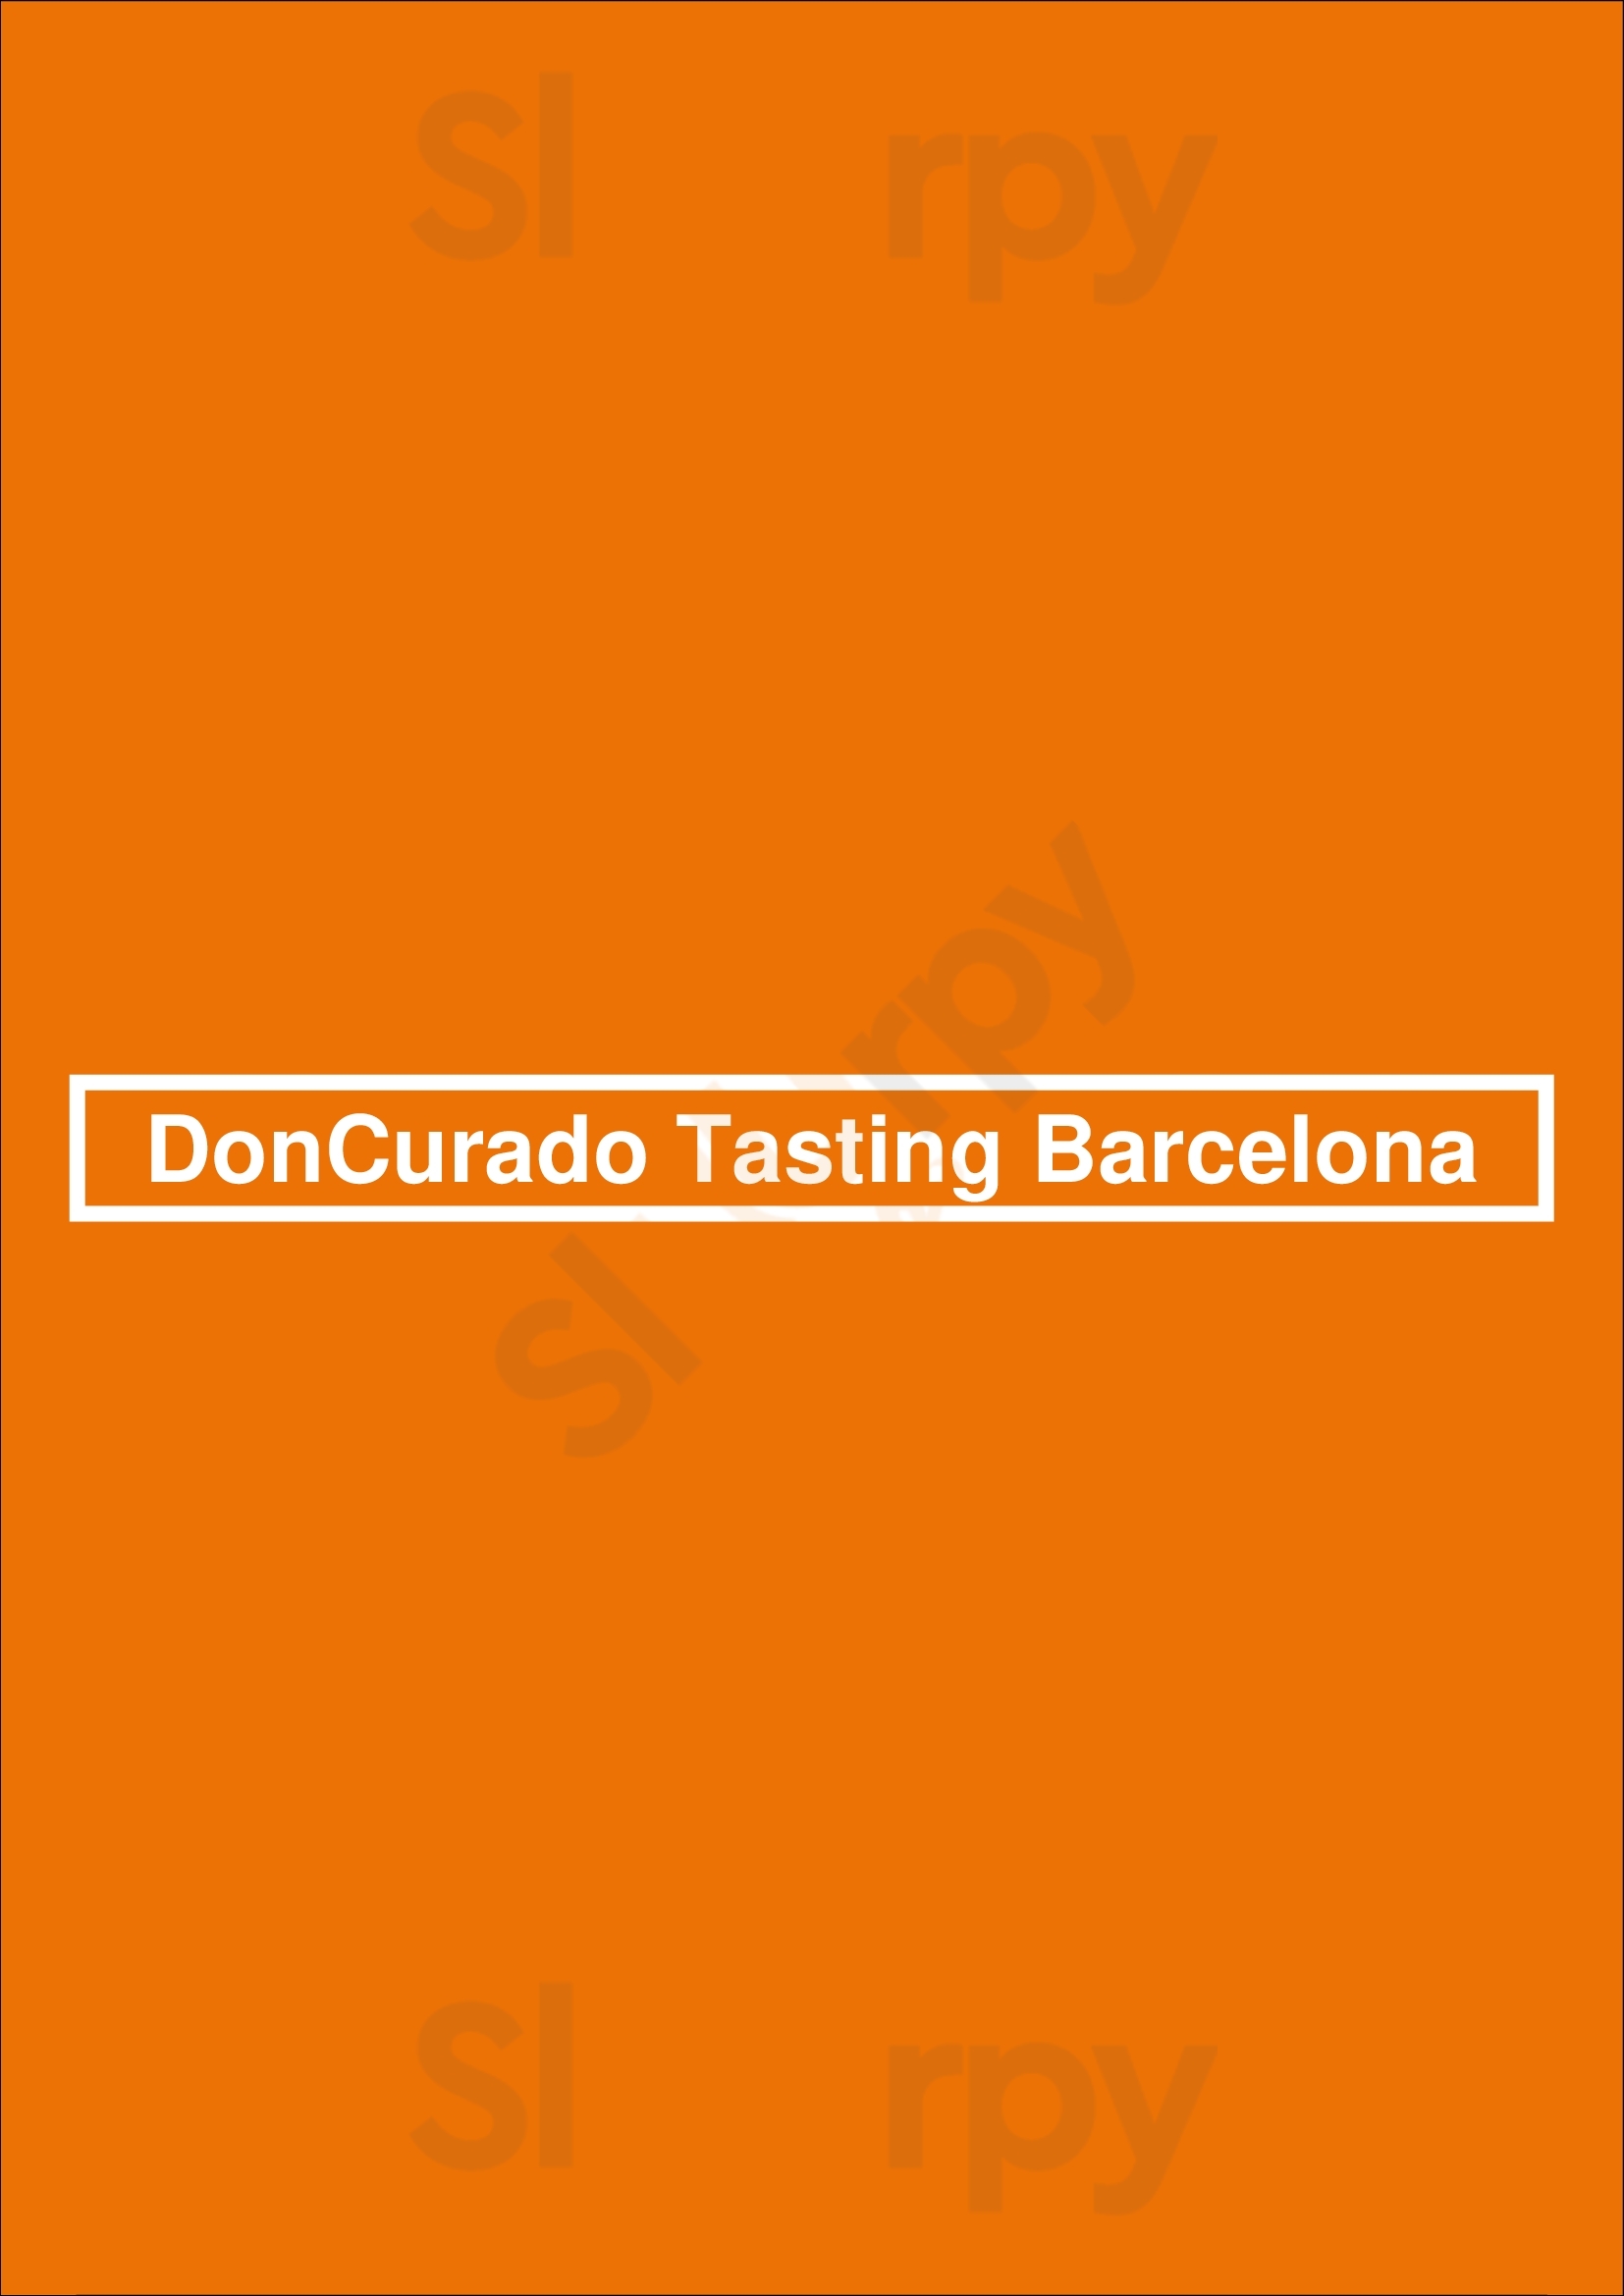 Doncurado Tasting Barcelona Barcelona Menu - 1